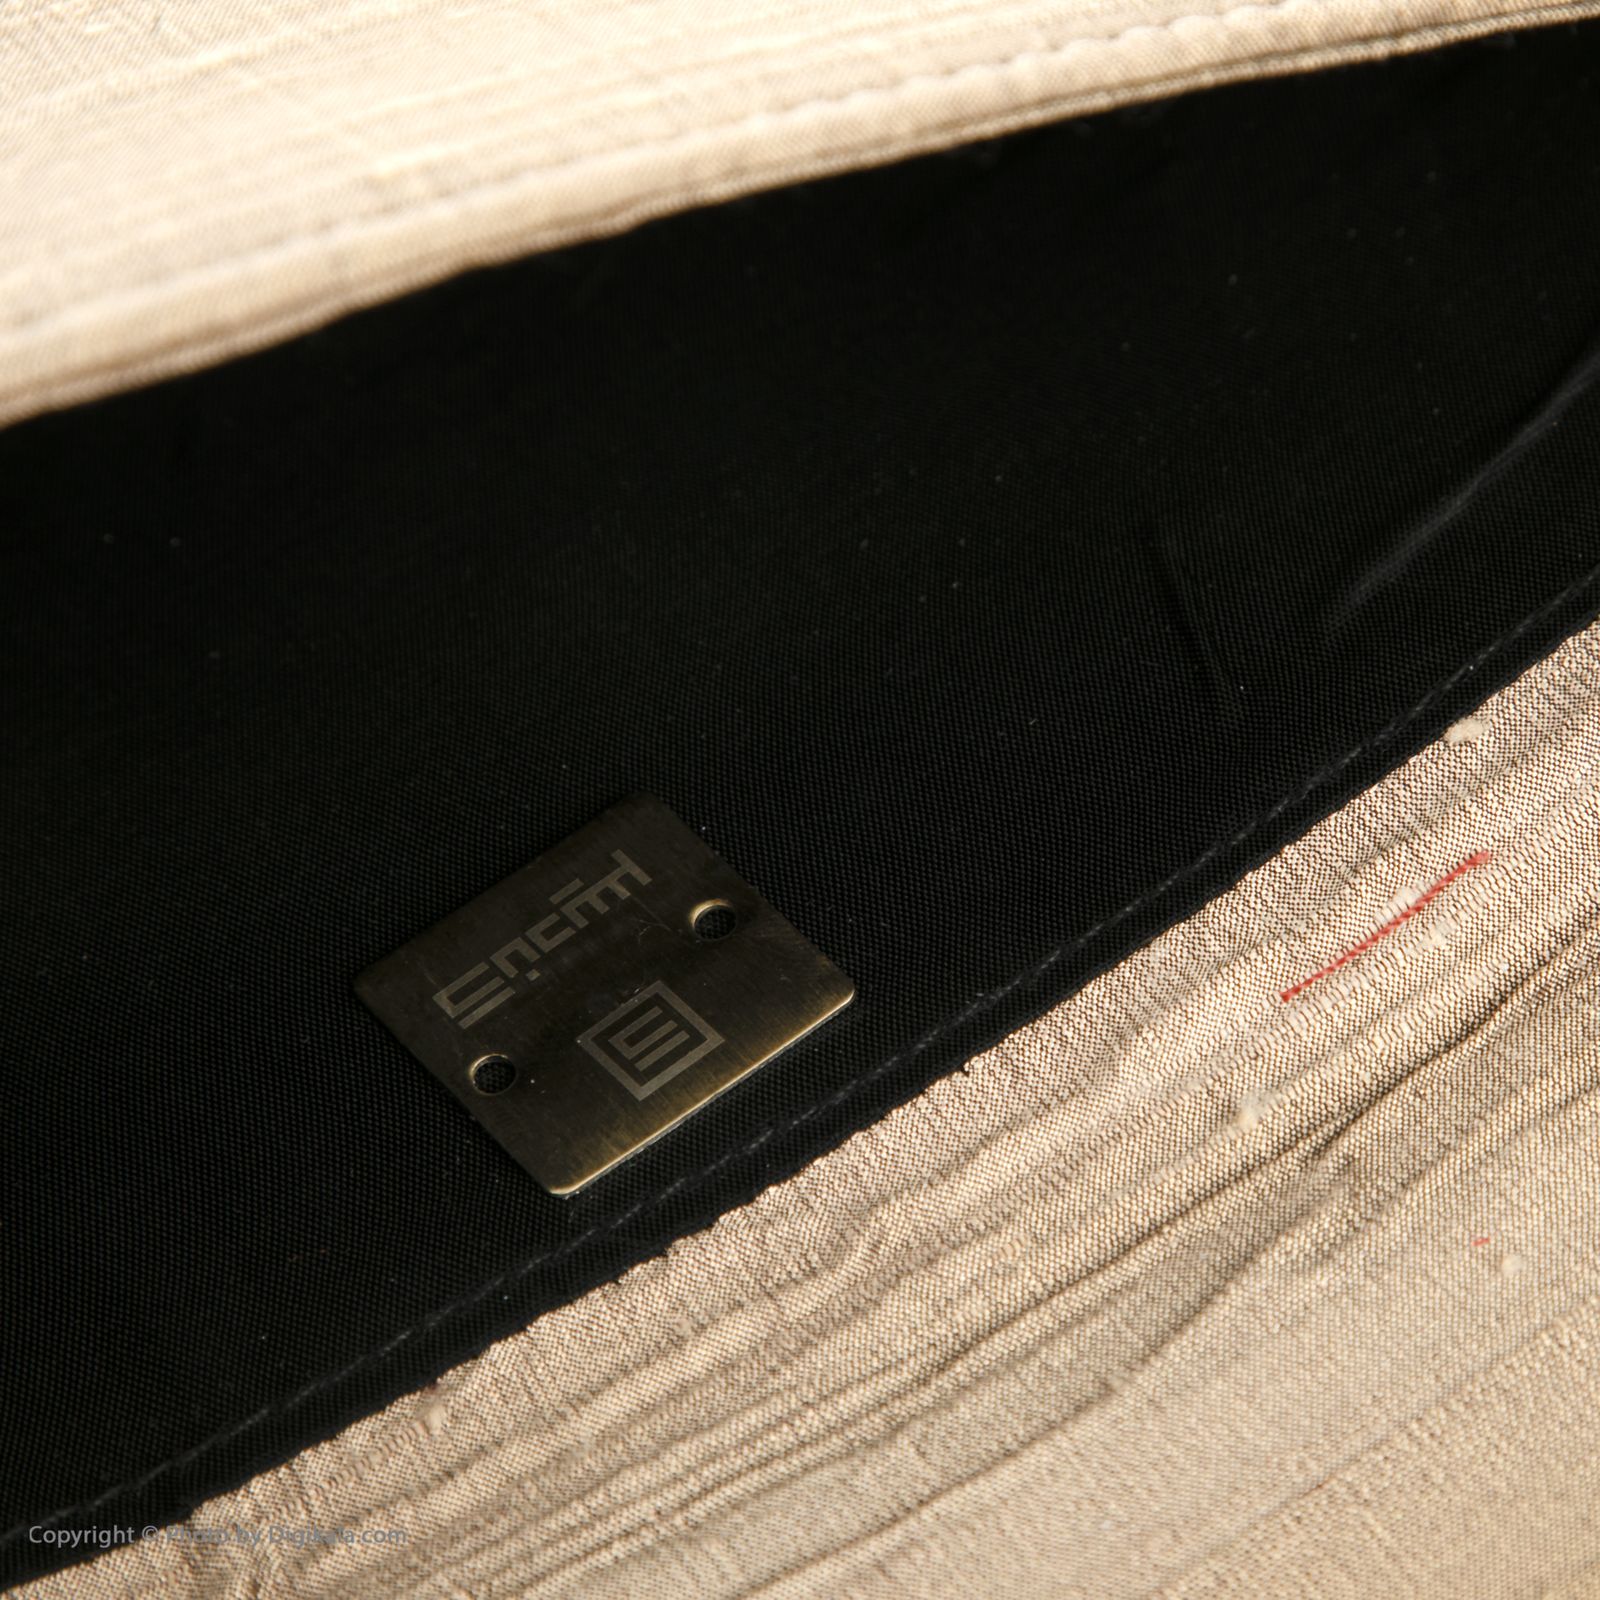 کیف دستی زنانه کندیس مدل 2001430 - قهوه اي - 6